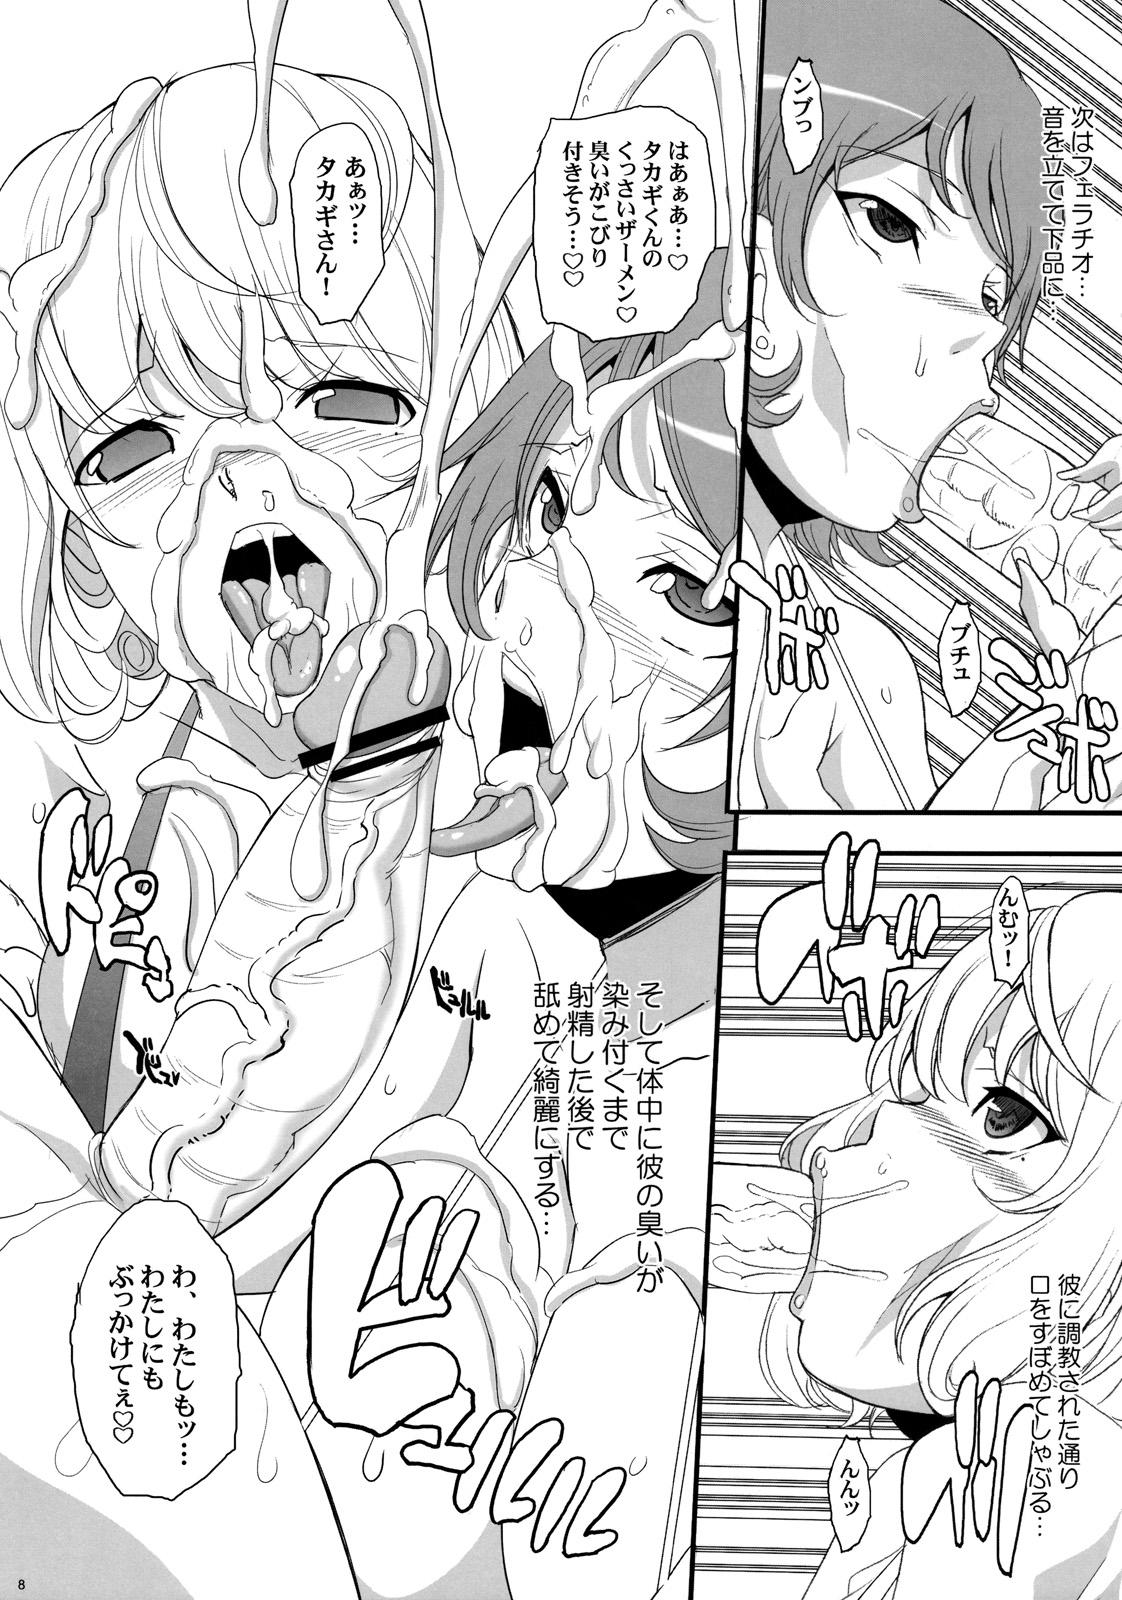 Spreading Takagi no Ichinichi - Bakuman Camwhore - Page 8